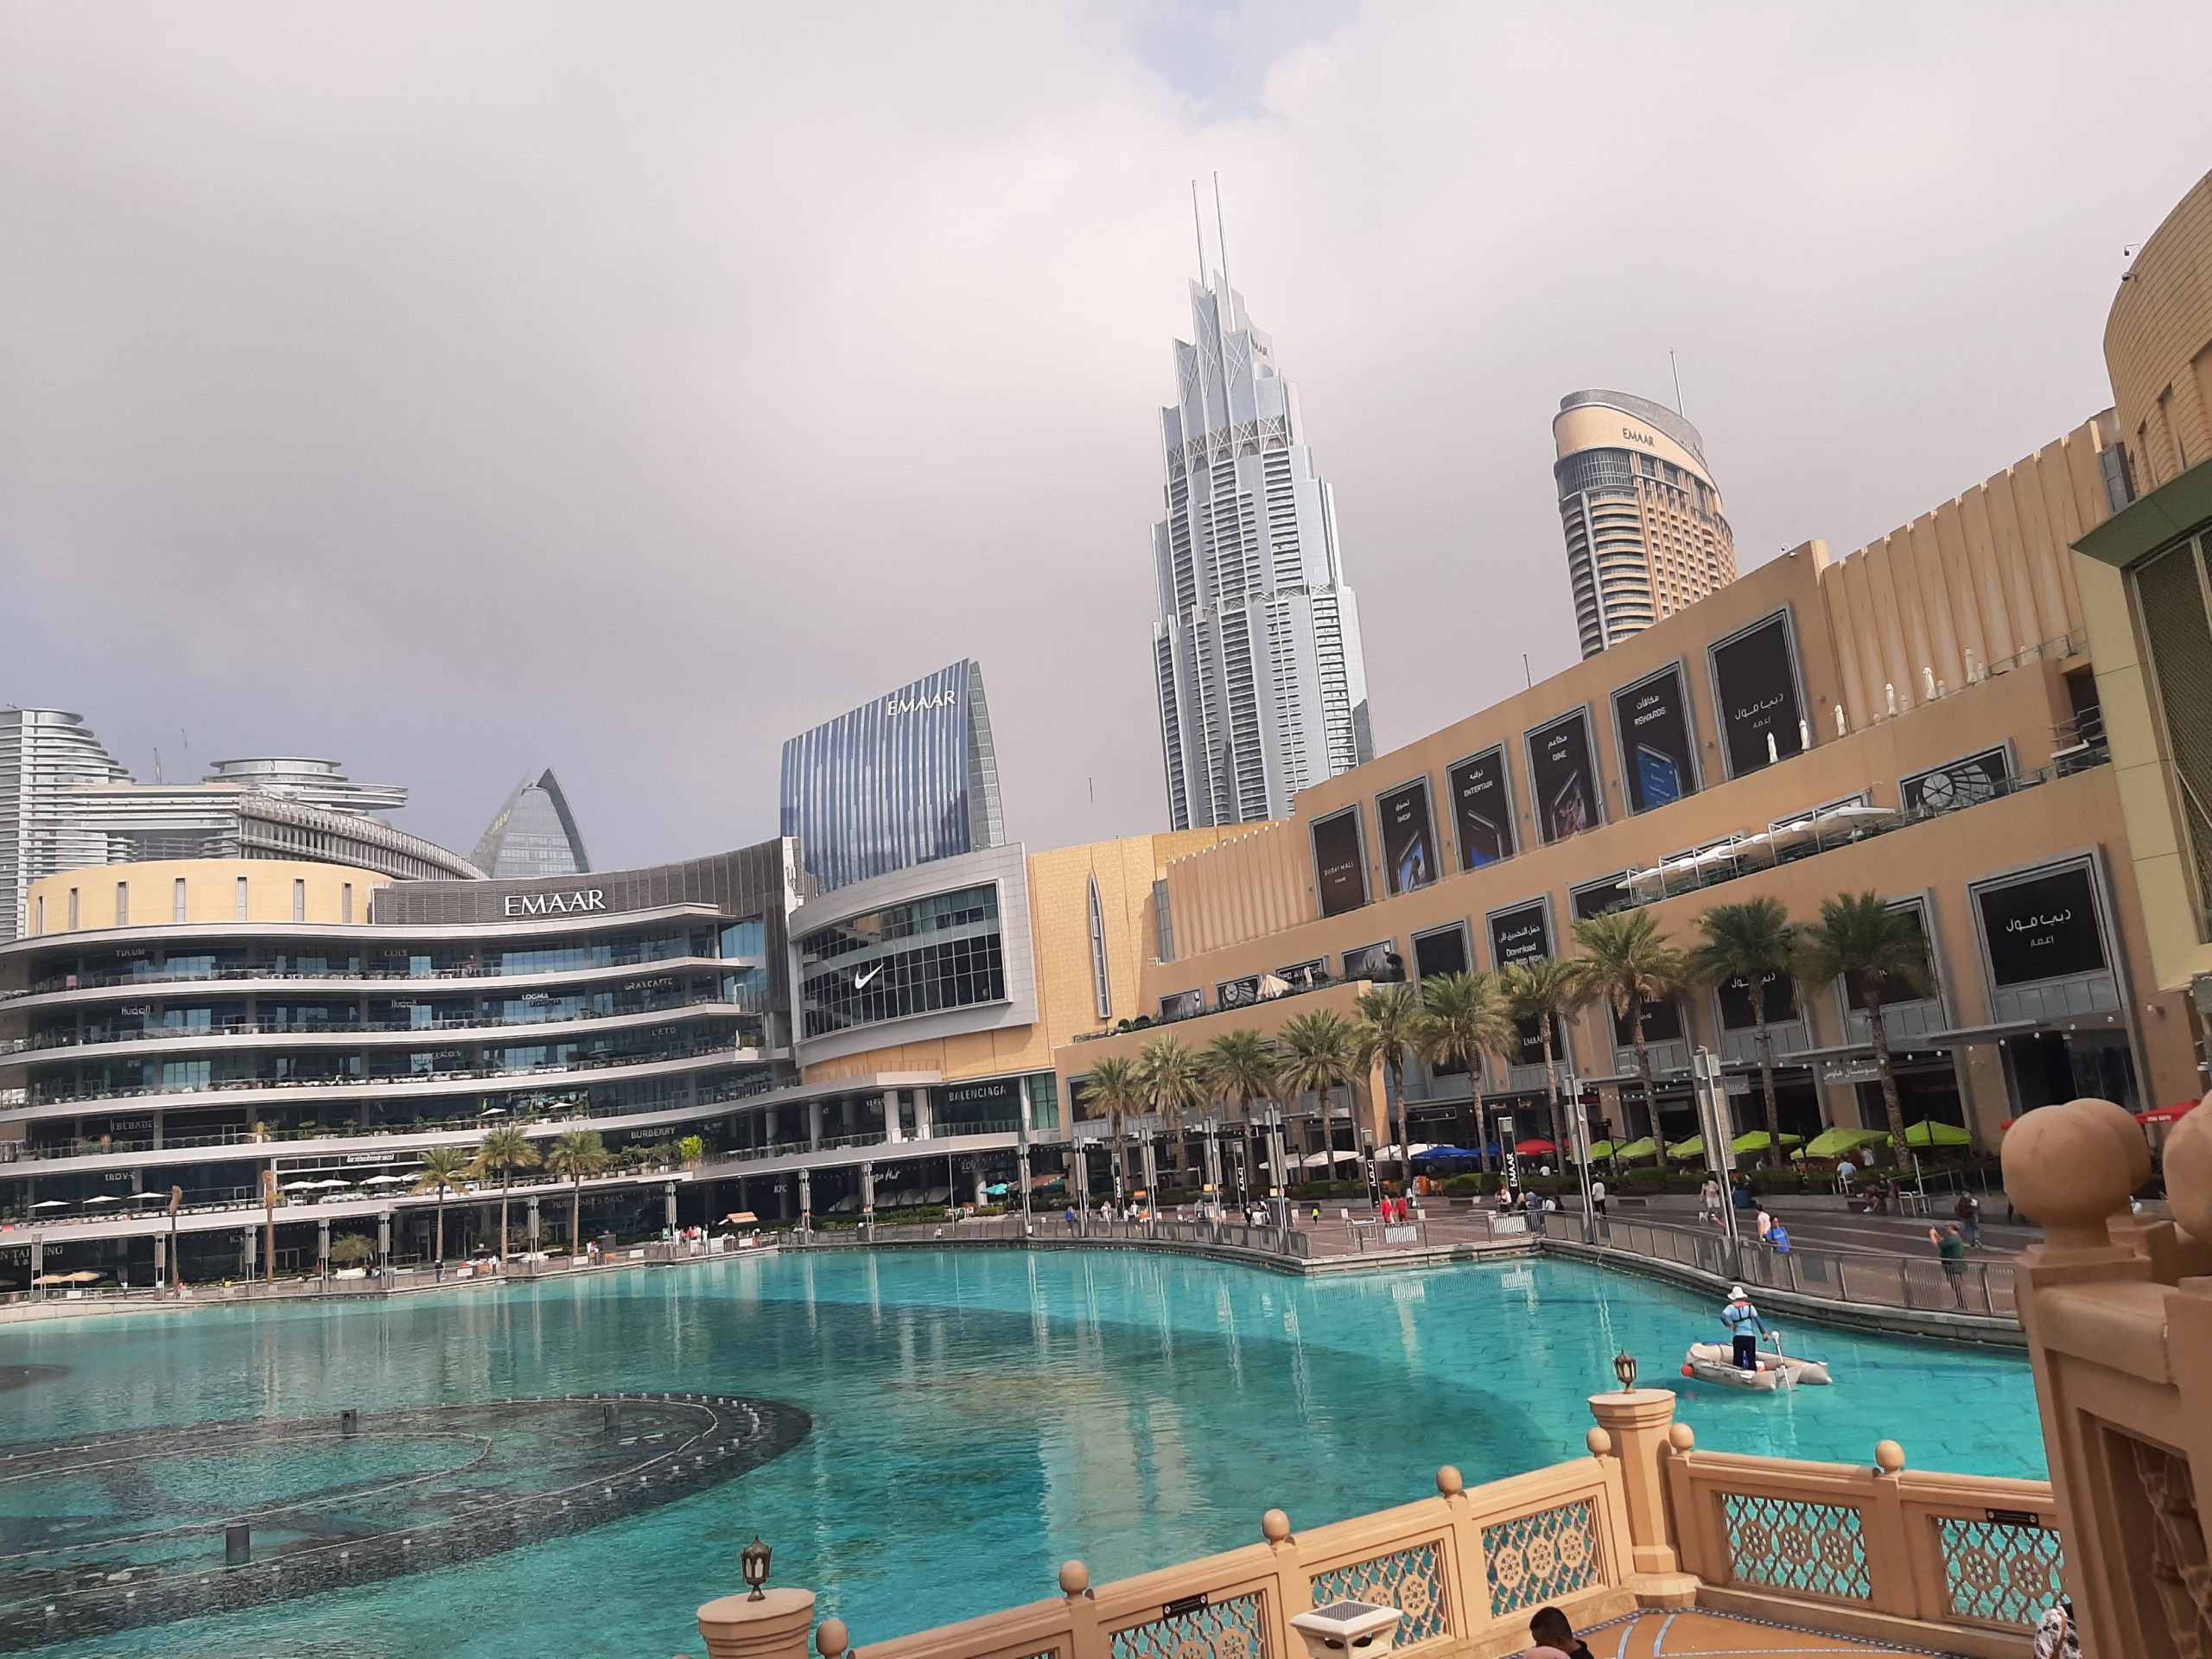 Dubai mol je najveći na svetu, prostire se na oko milion kvadratnih metara, u njemu ima preko 1.200 prodavnica, a ima i akvarijum, podvodni zoo vrt, vodopade, klizališta, fontane, operu, restorane